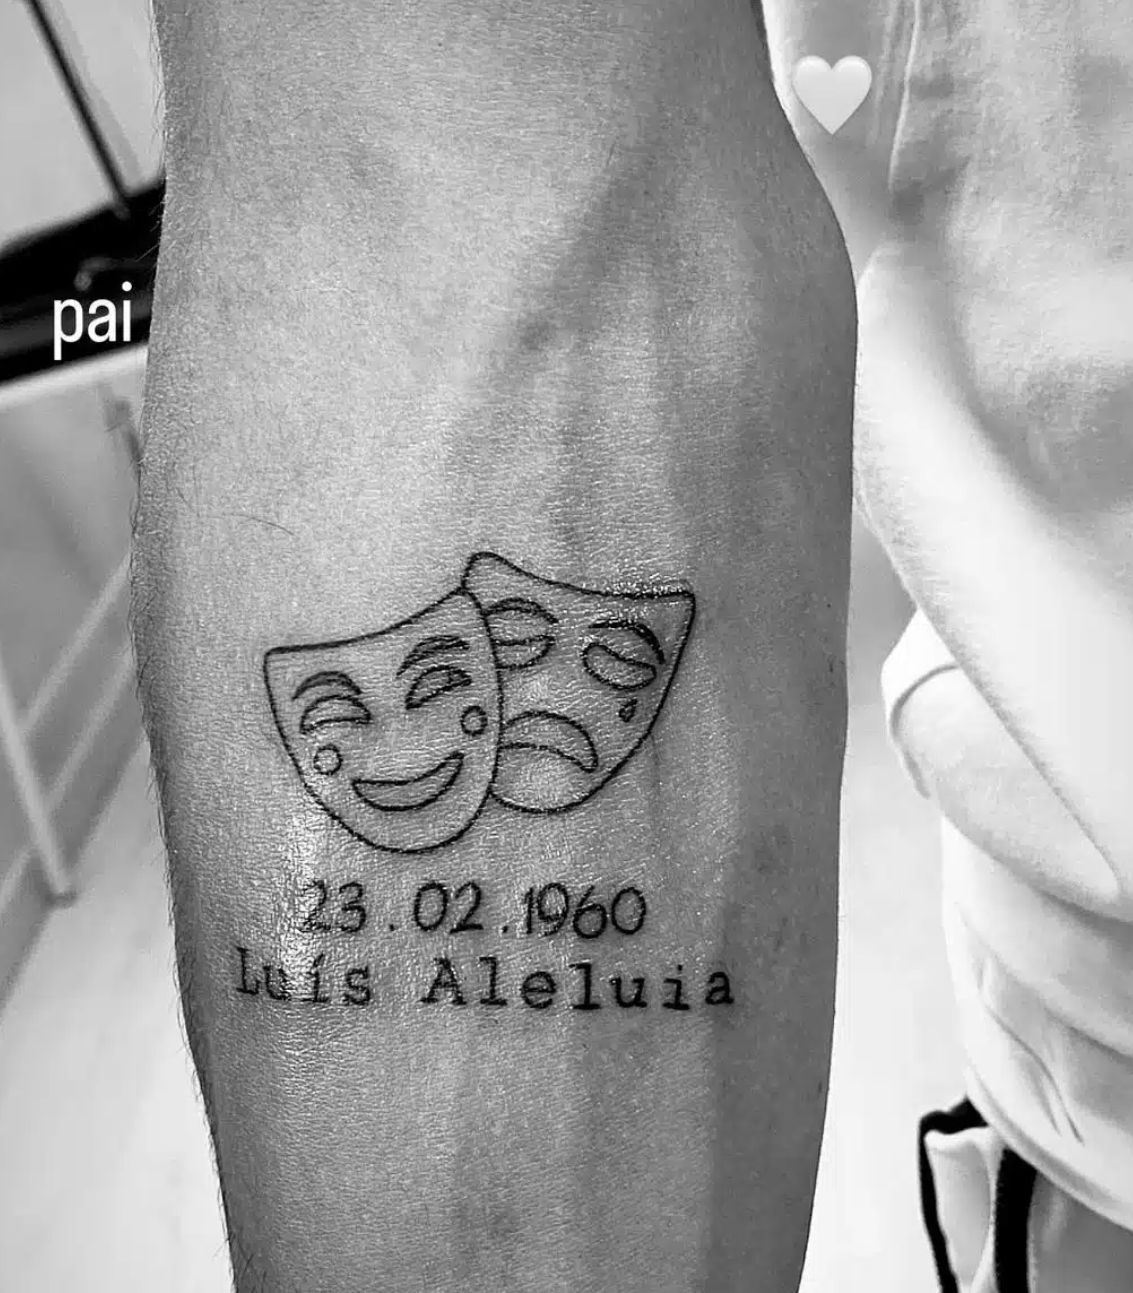 Emoção! Filho de Luís Aleluia eterniza o pai com (belíssima) tatuagem